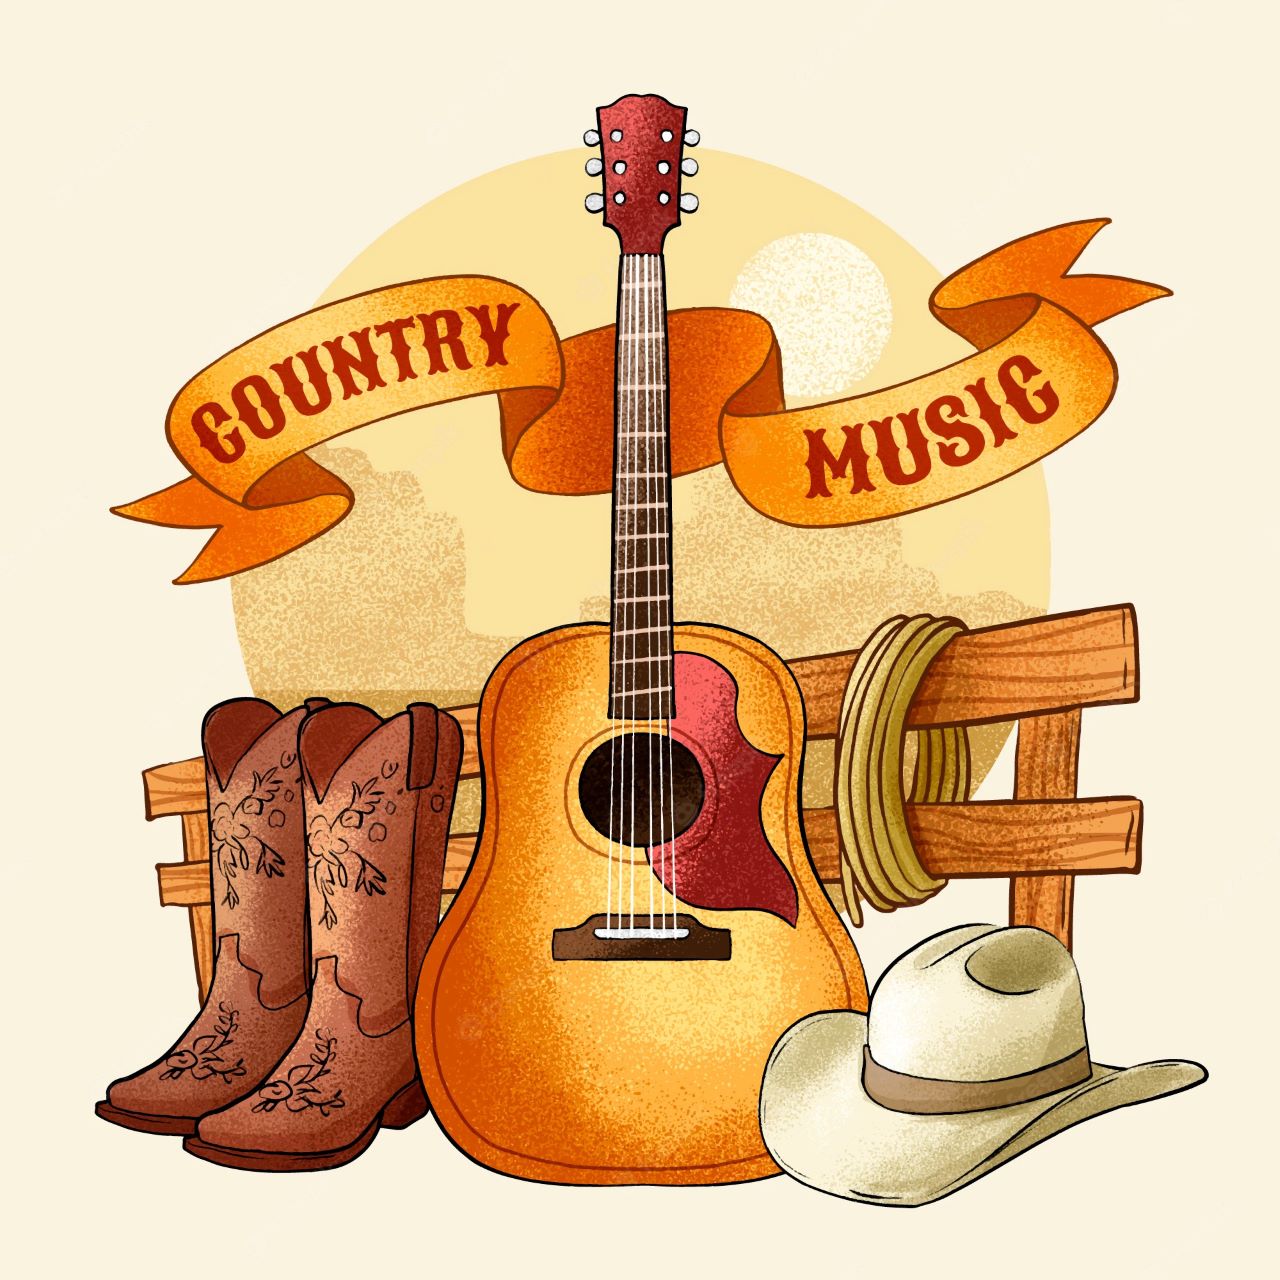 Foto per articoli di Country Music